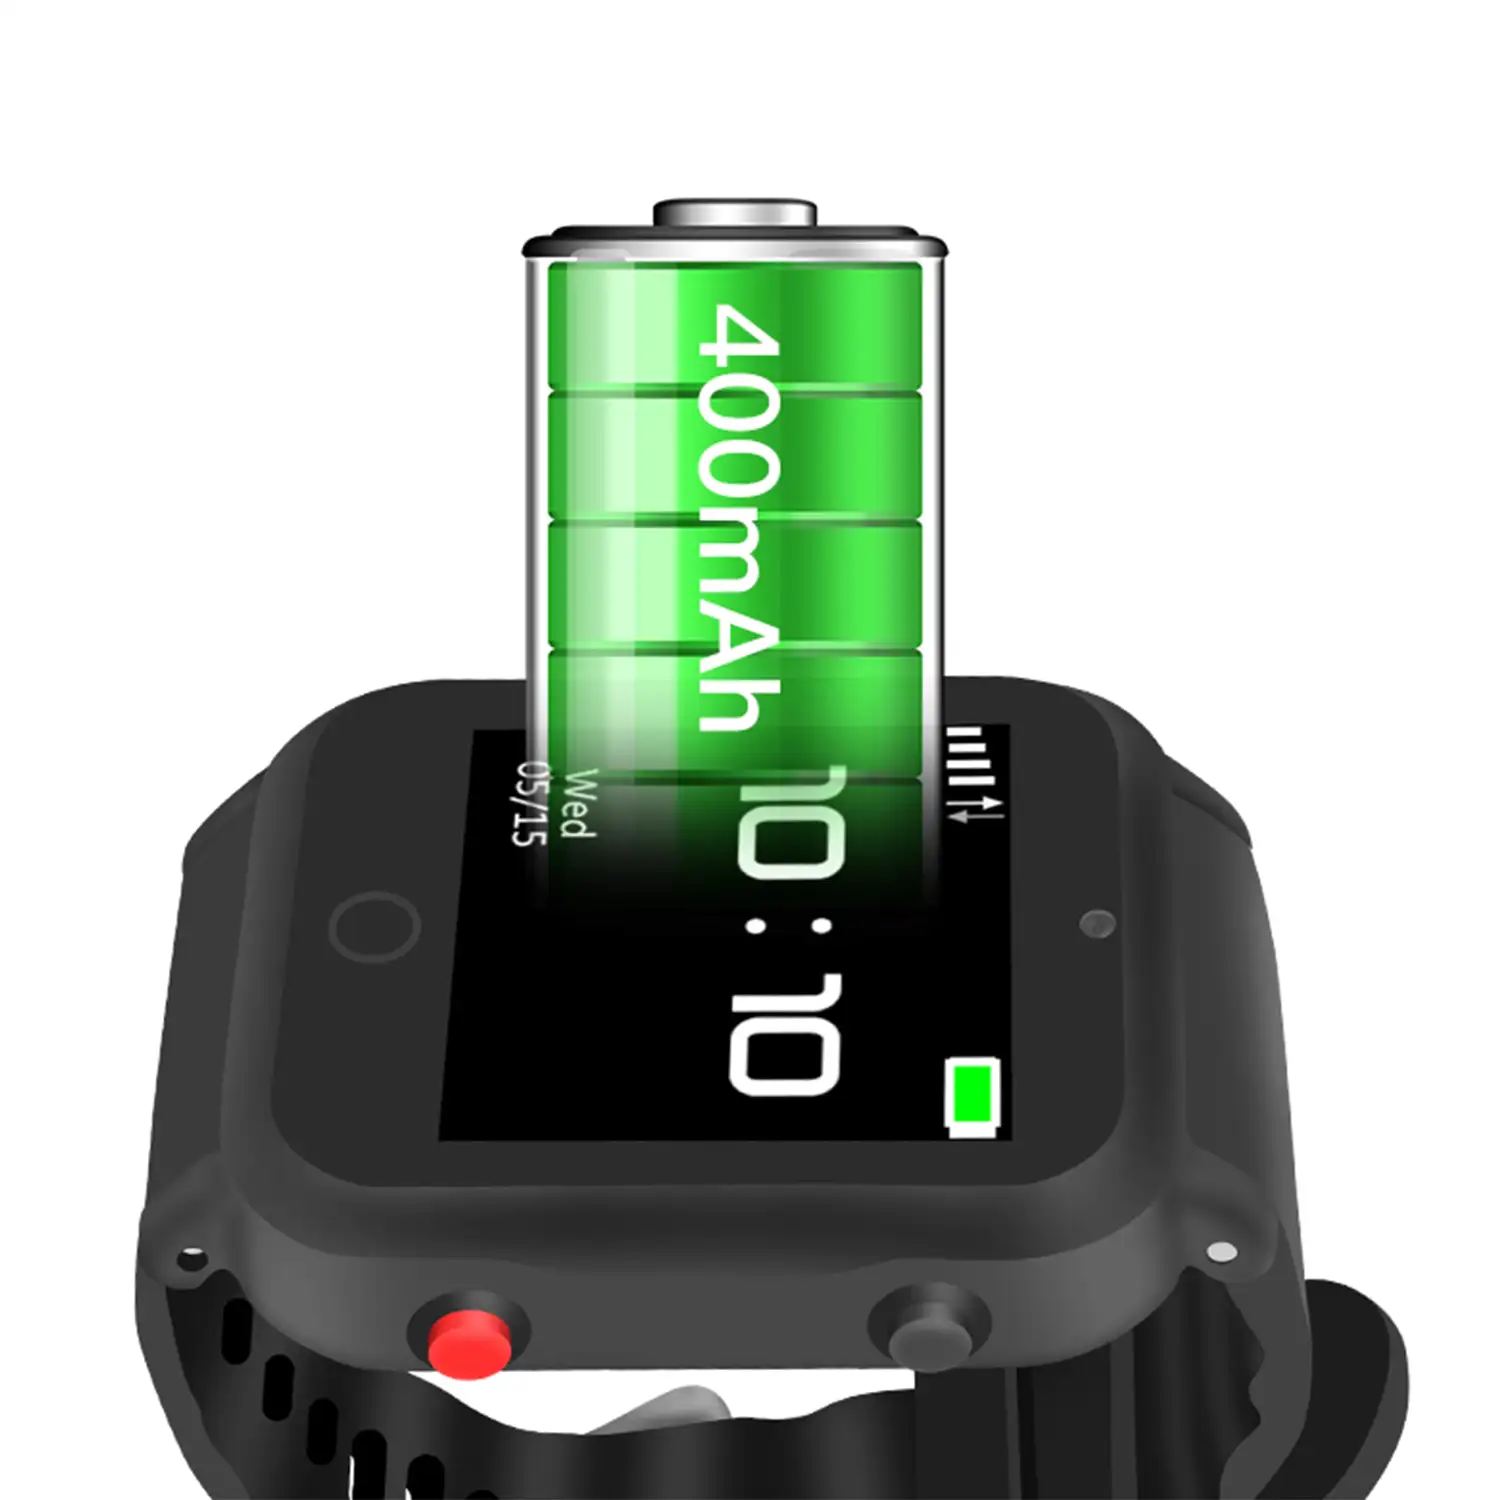 Smartwatch S88 localizador GPS, AGPS y LBS. Especial personas mayores. Con botón SOS.